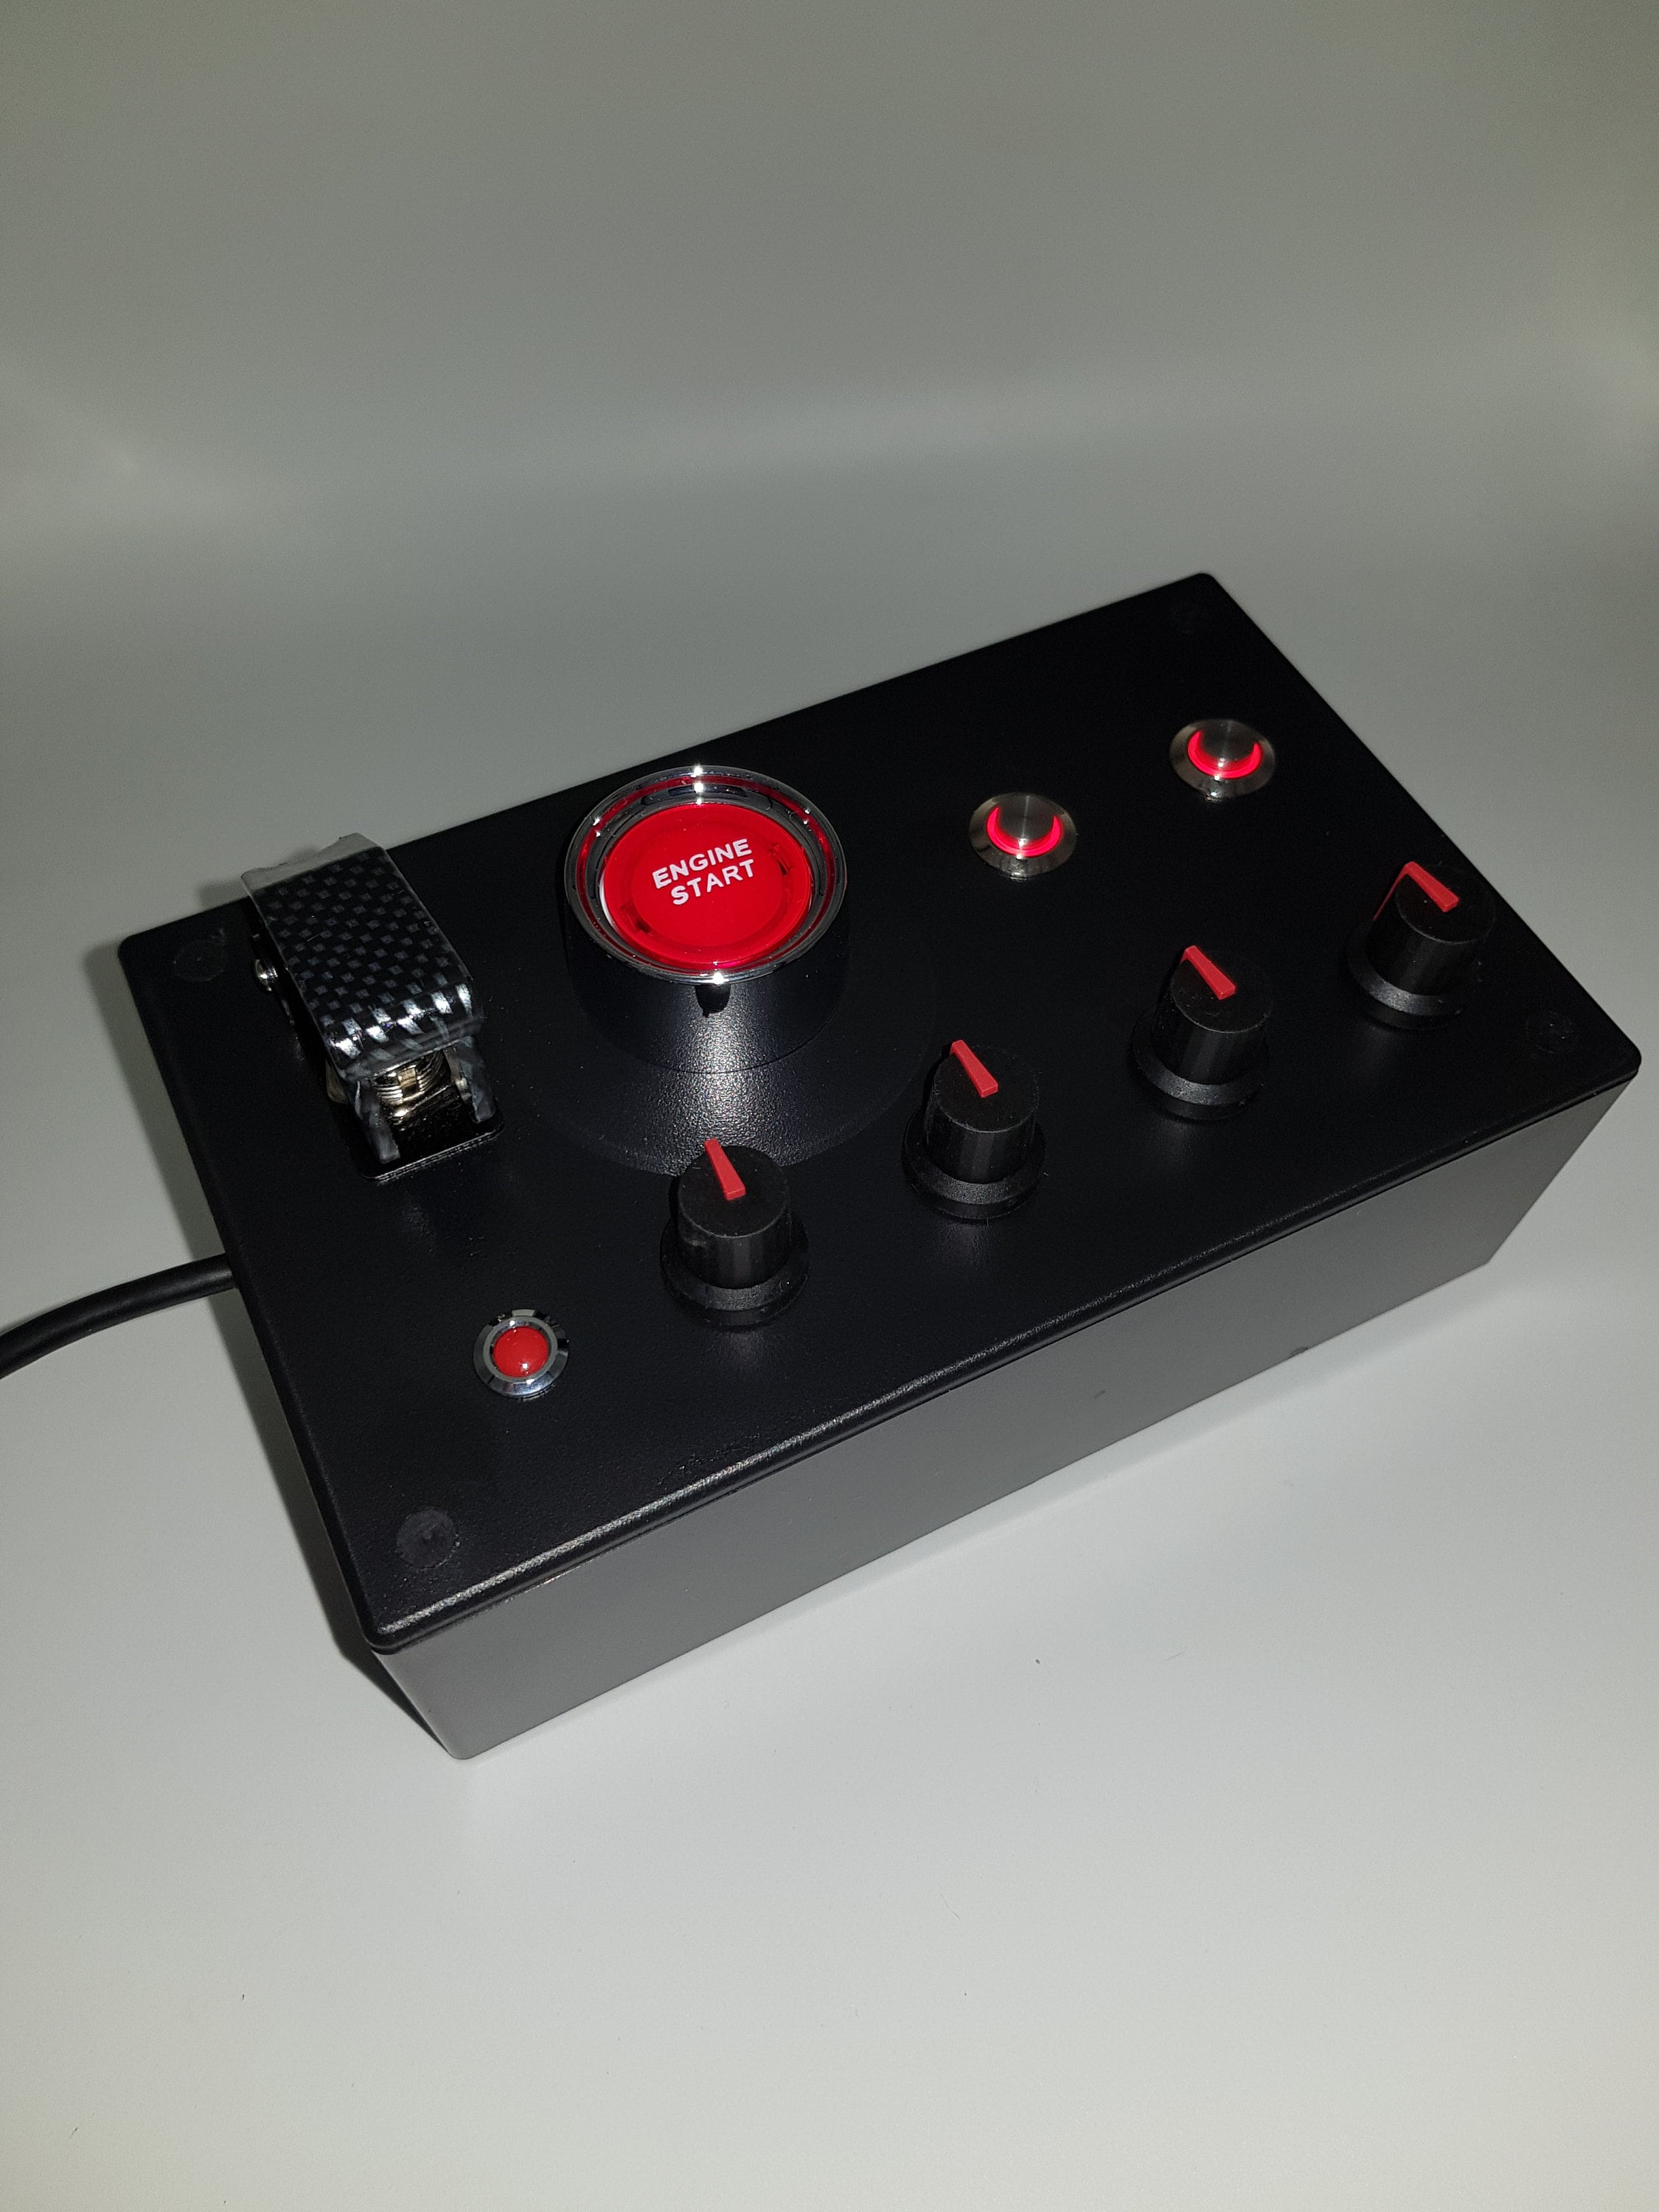 PC Sim Racing Button Box - 12 Function Button, Plug and Play USB, AMPS  Mountable